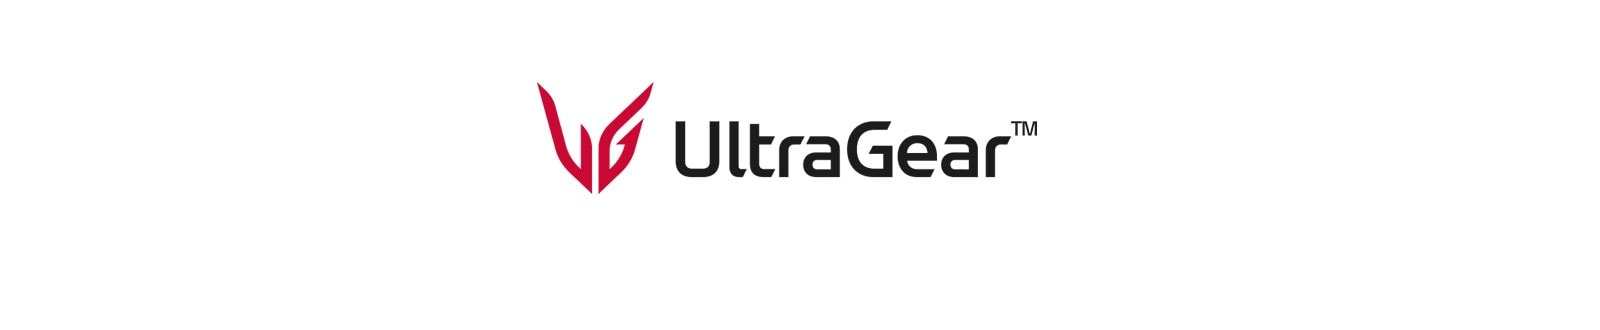 UltraGear™-gamingmonitor.